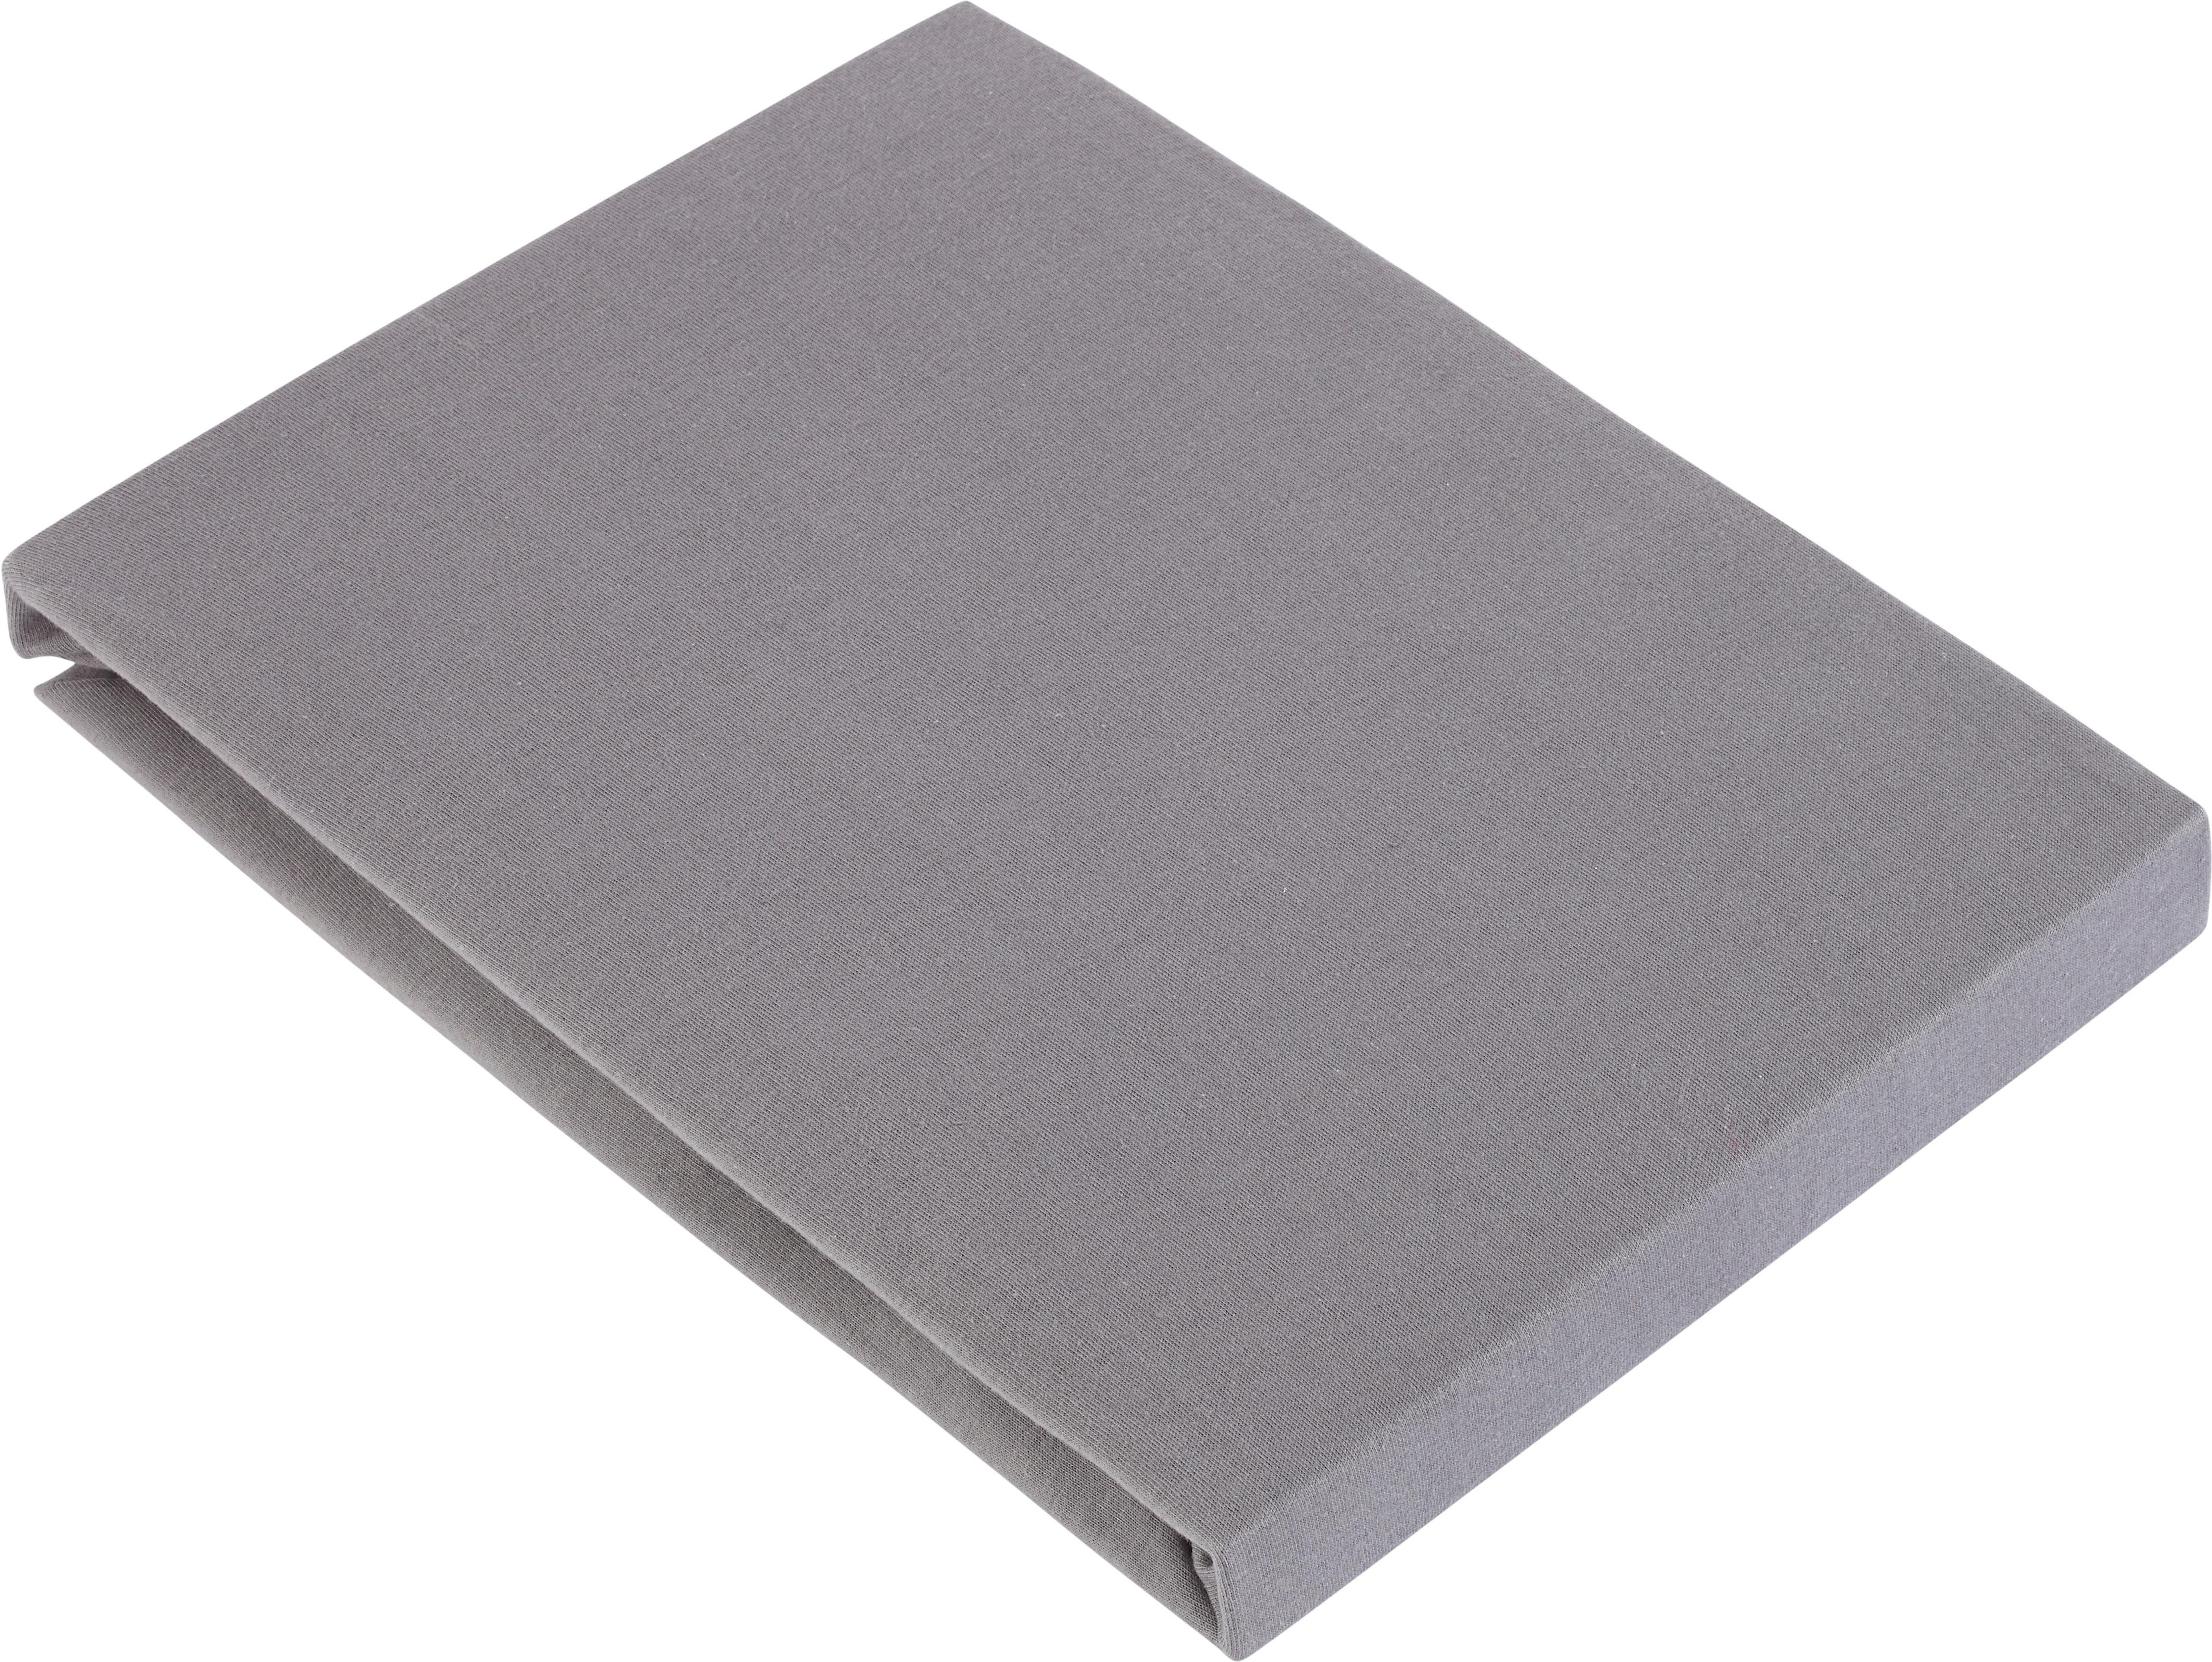 Elastické Prostěradlo Basic, 100/200 Cm - šedá, textil (100/200cm) - Modern Living